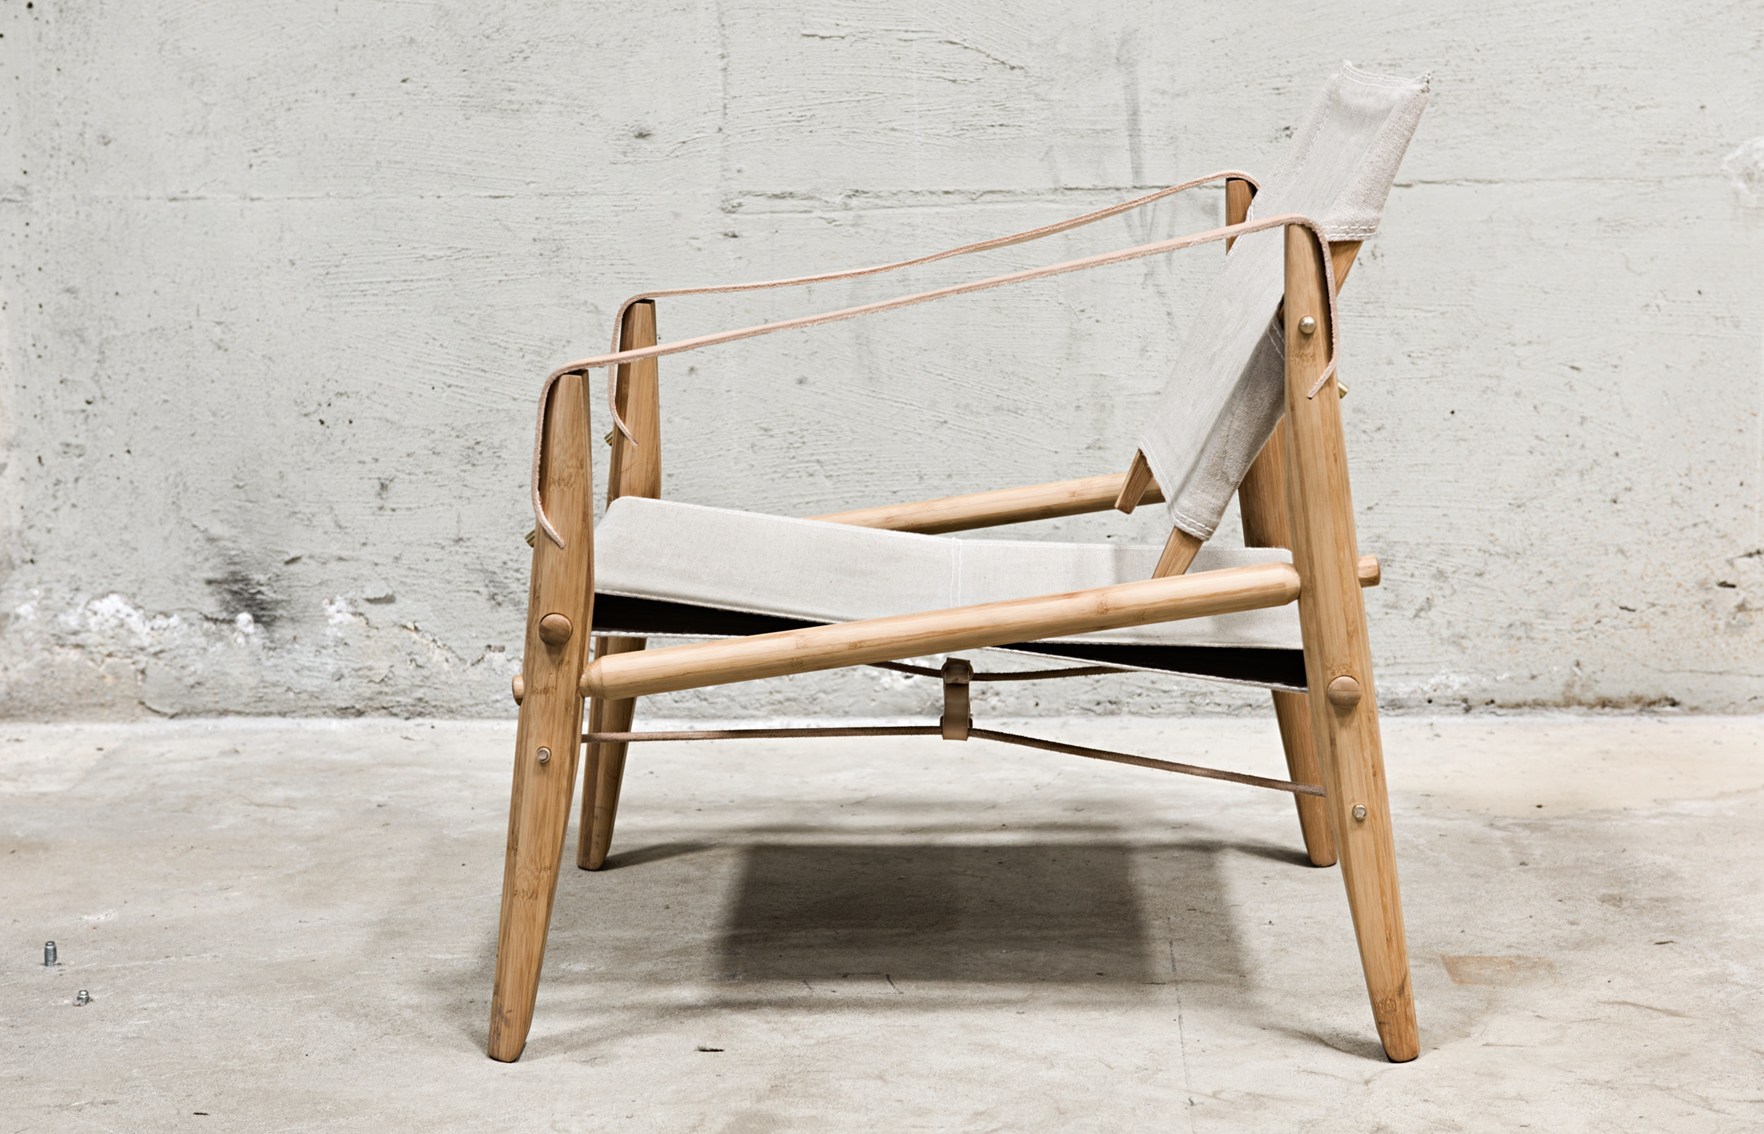 Nomad Chair by Sebastian Jørgensen for We Do Wood